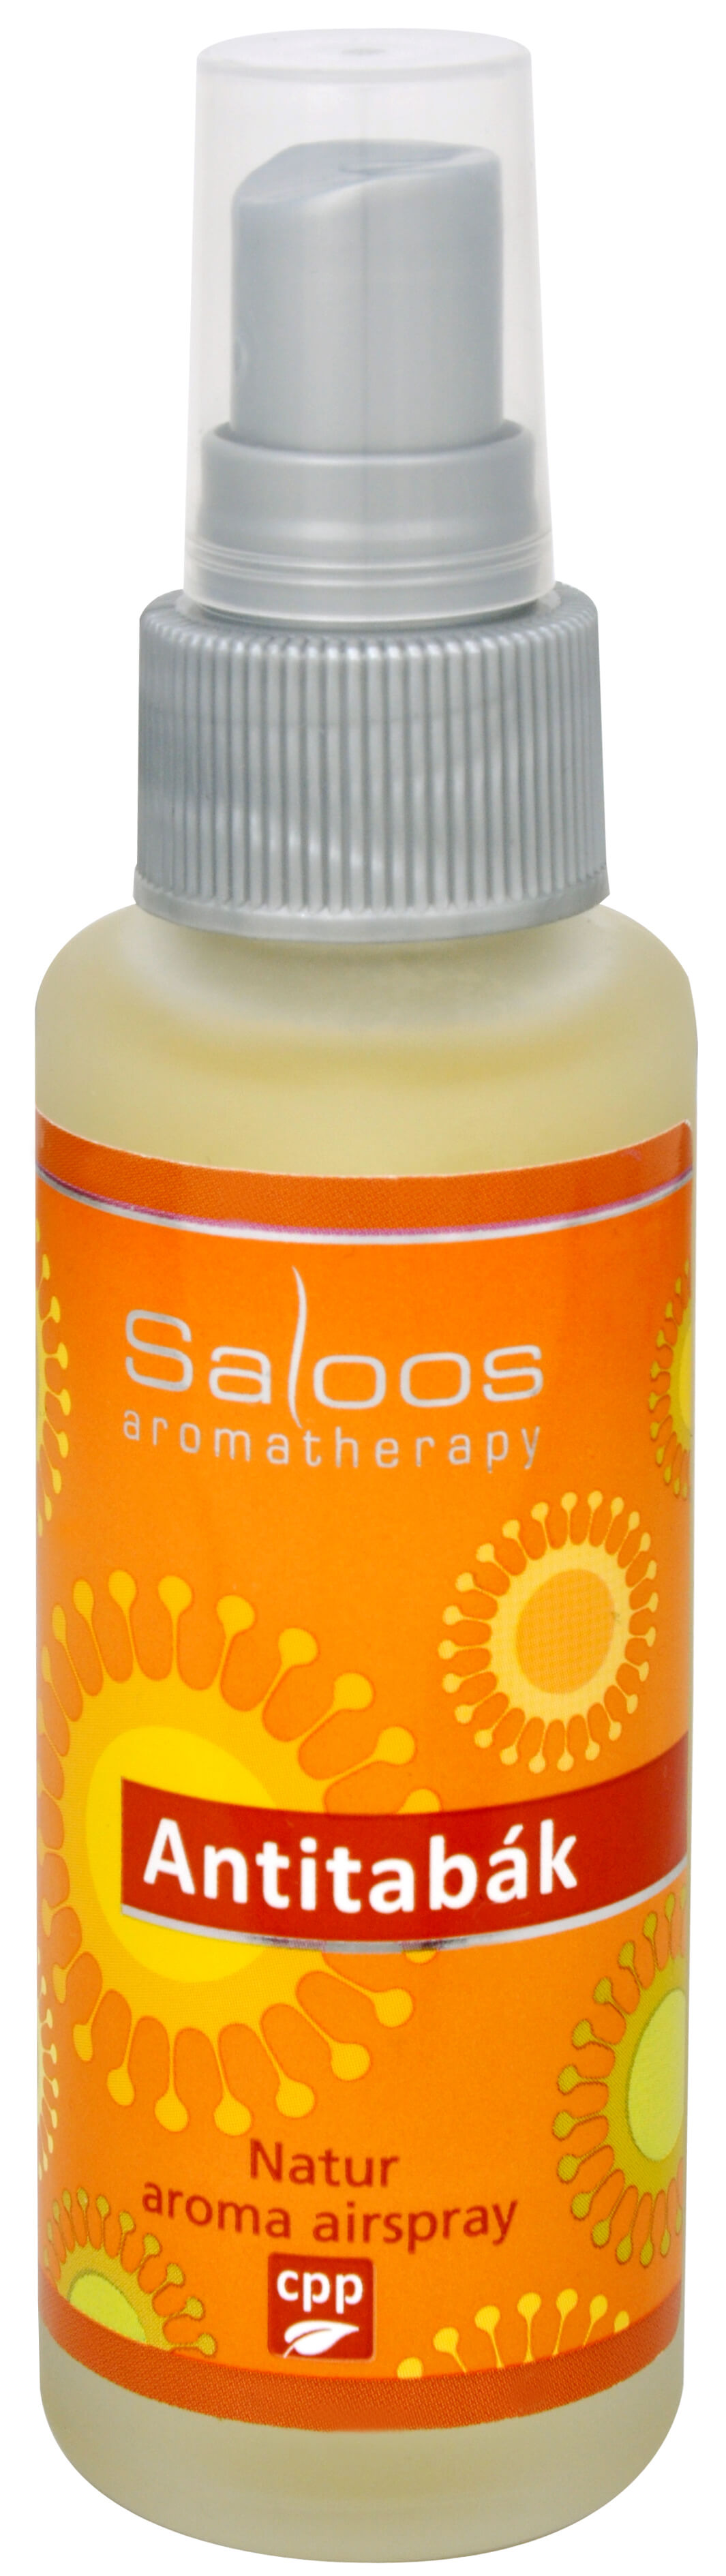 Zobrazit detail výrobku Saloos Natur aroma airspray - Antitabák (přírodní osvěžovač vzduchu) 50 ml + 2 měsíce na vrácení zboží